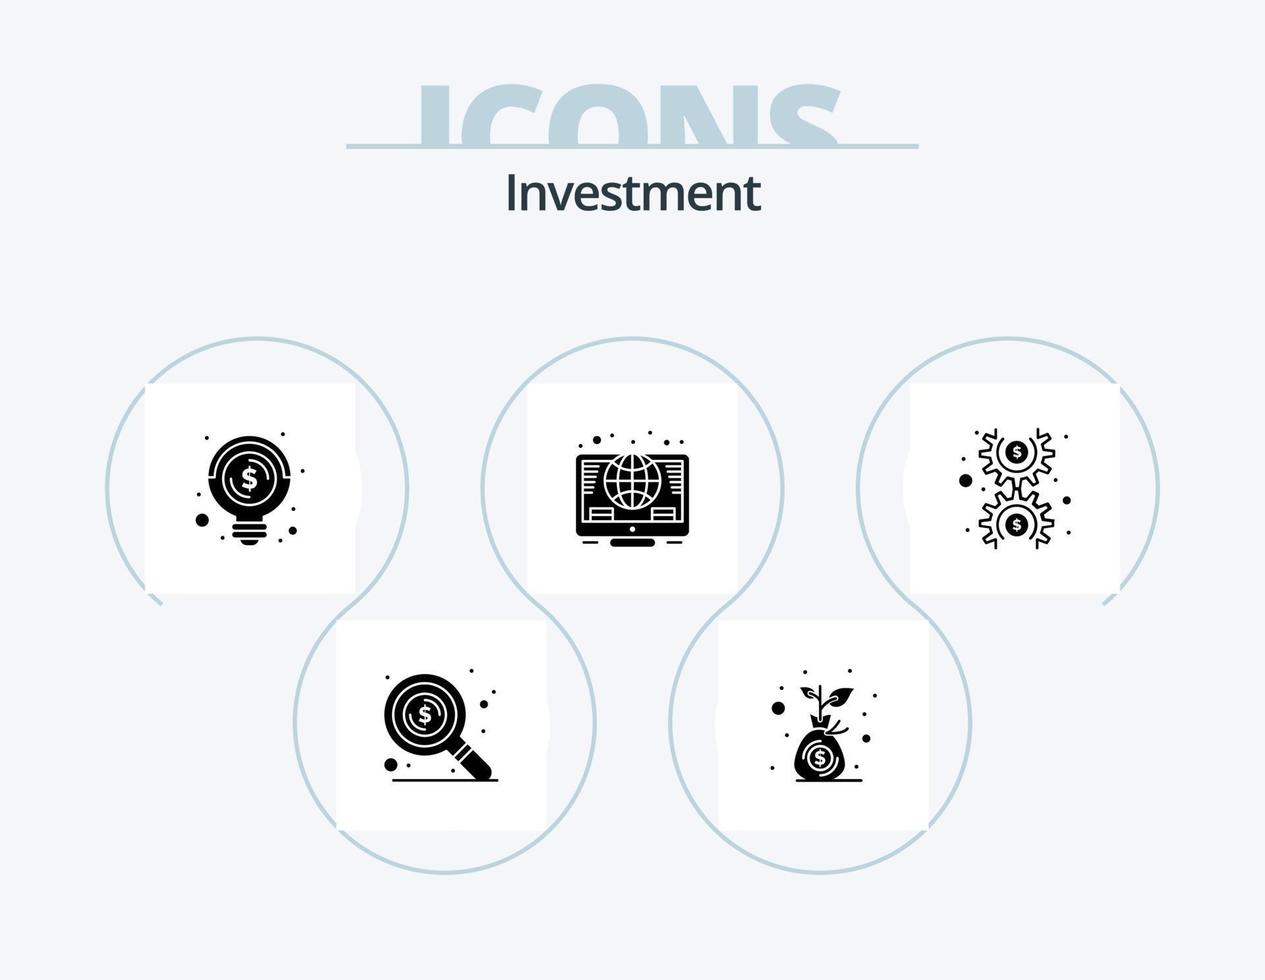 investimento glifo icona imballare 5 icona design. i soldi. dollaro. attività commerciale. monete. globale vettore